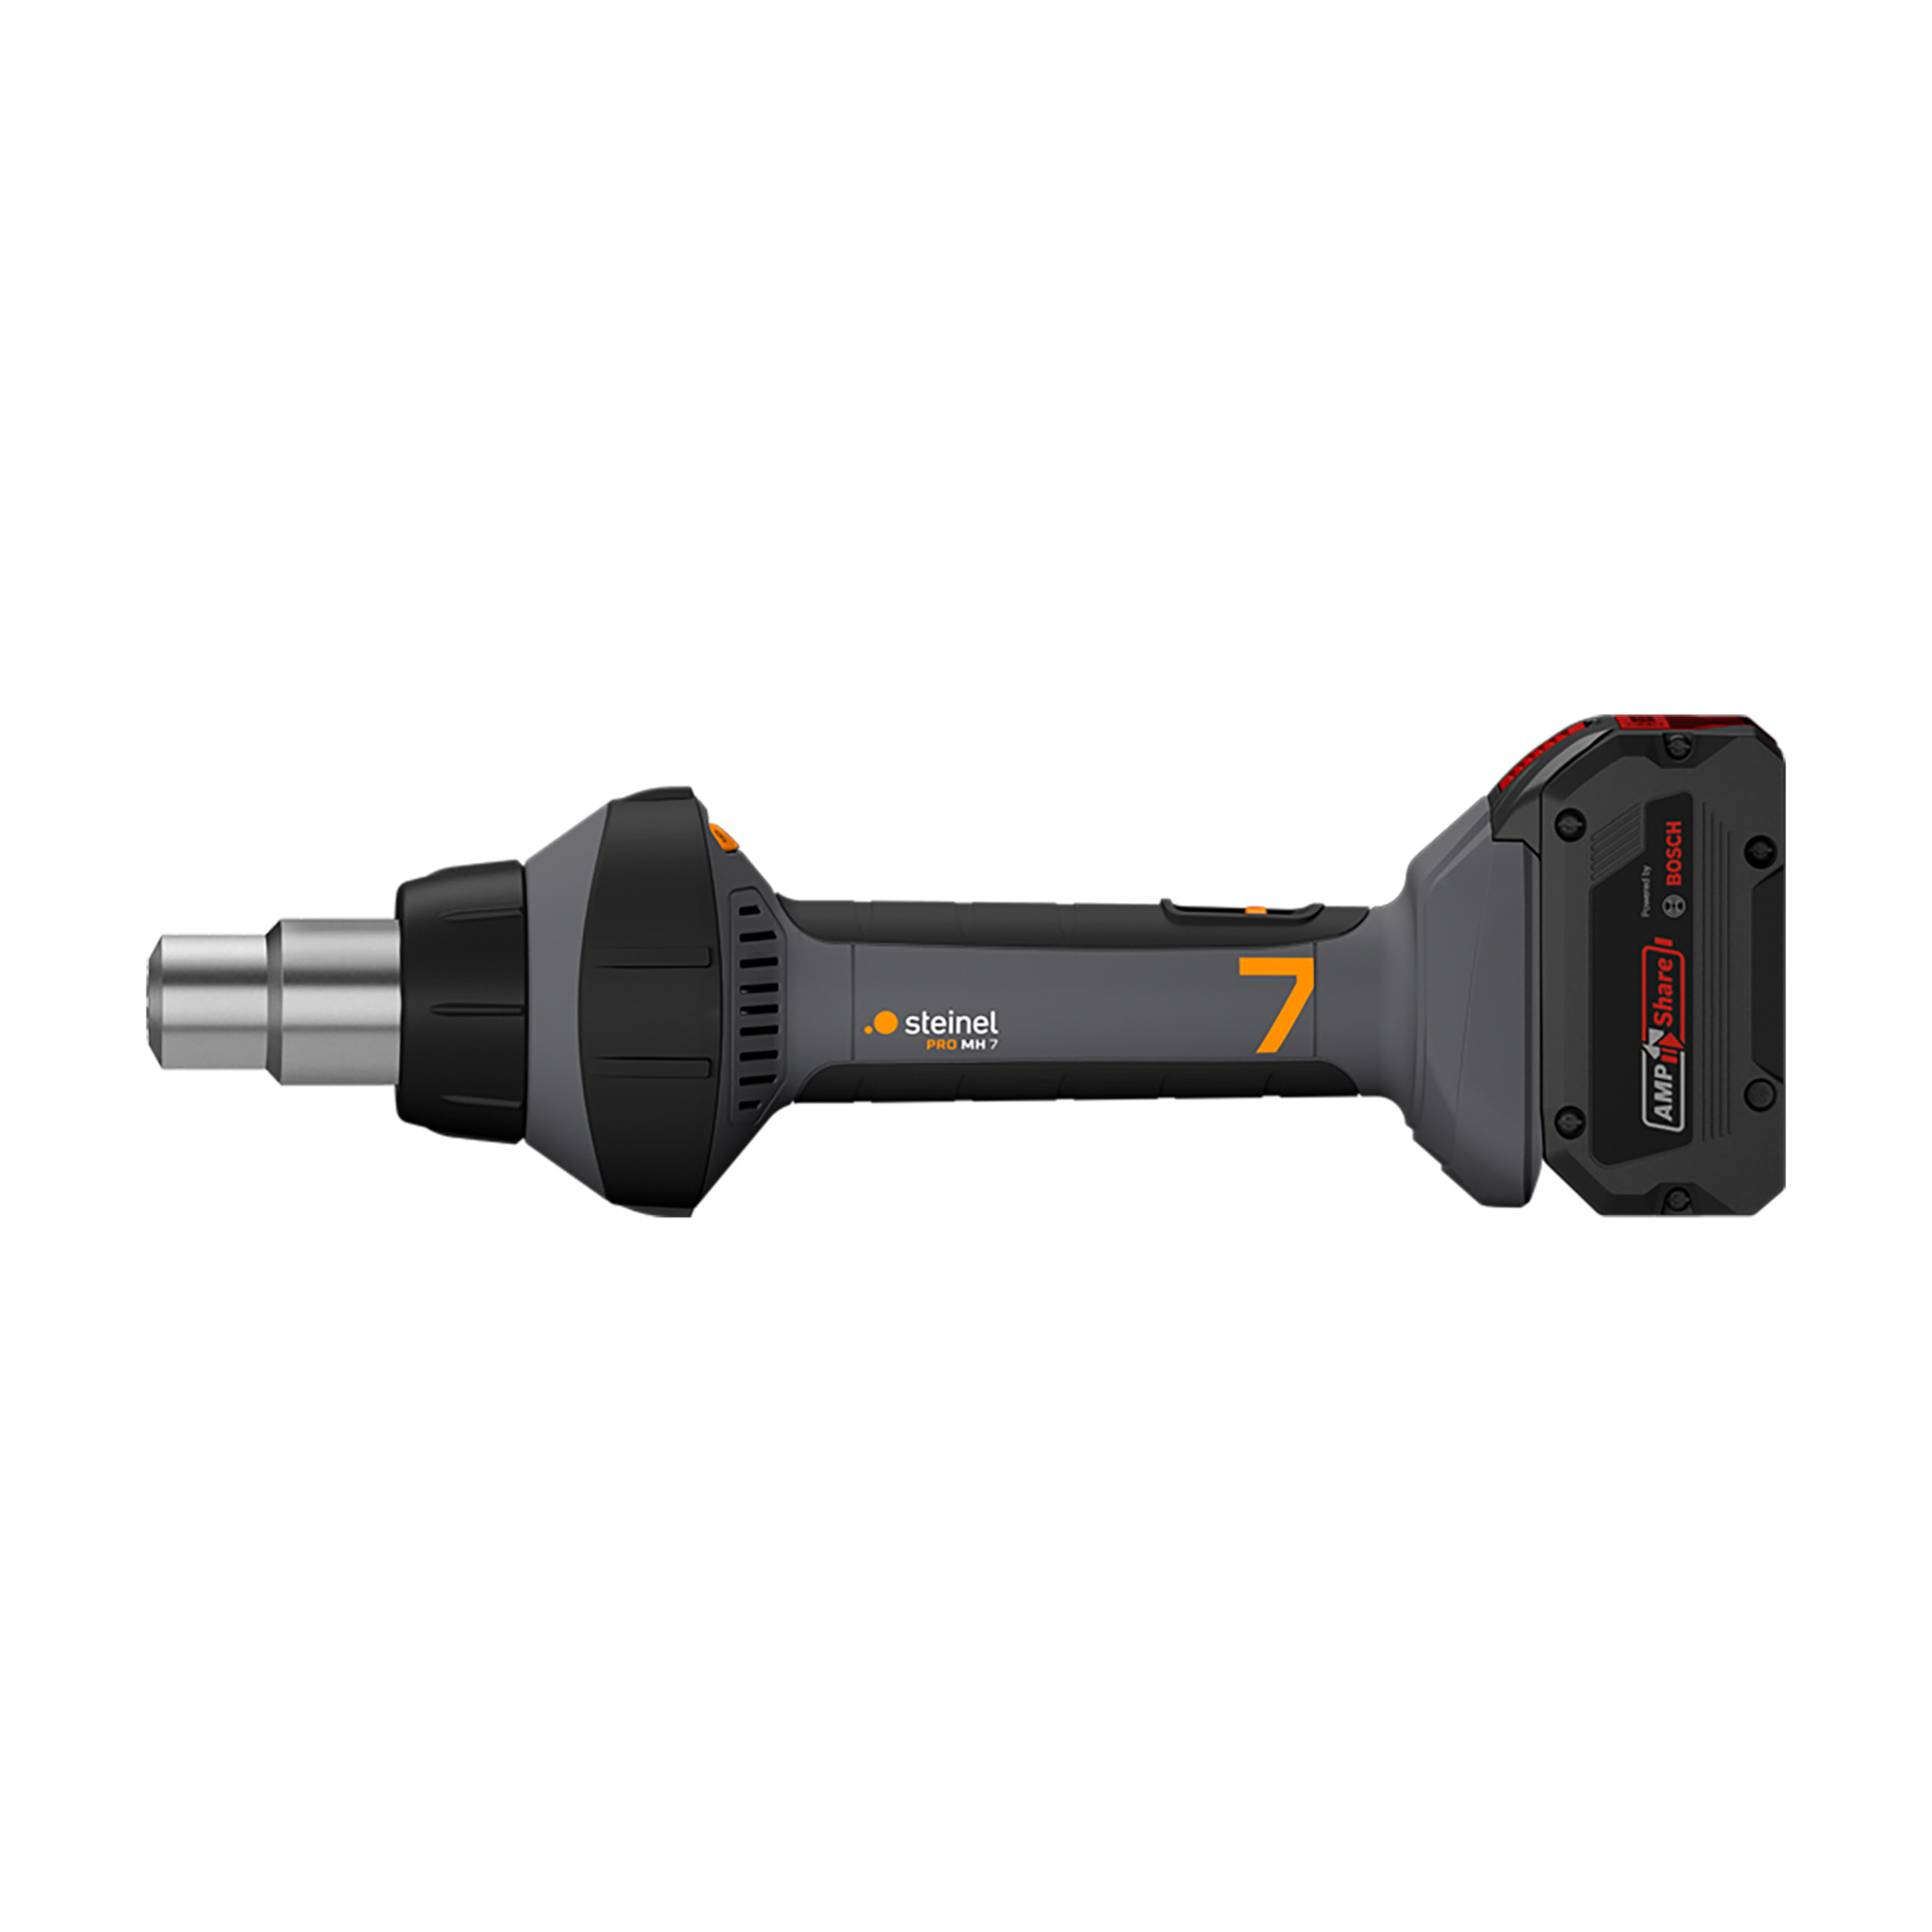 MobileHeat 3 5,5Ah batterie et chargeur inclus - Pistolet à air chaud sans  fil - Professional Line